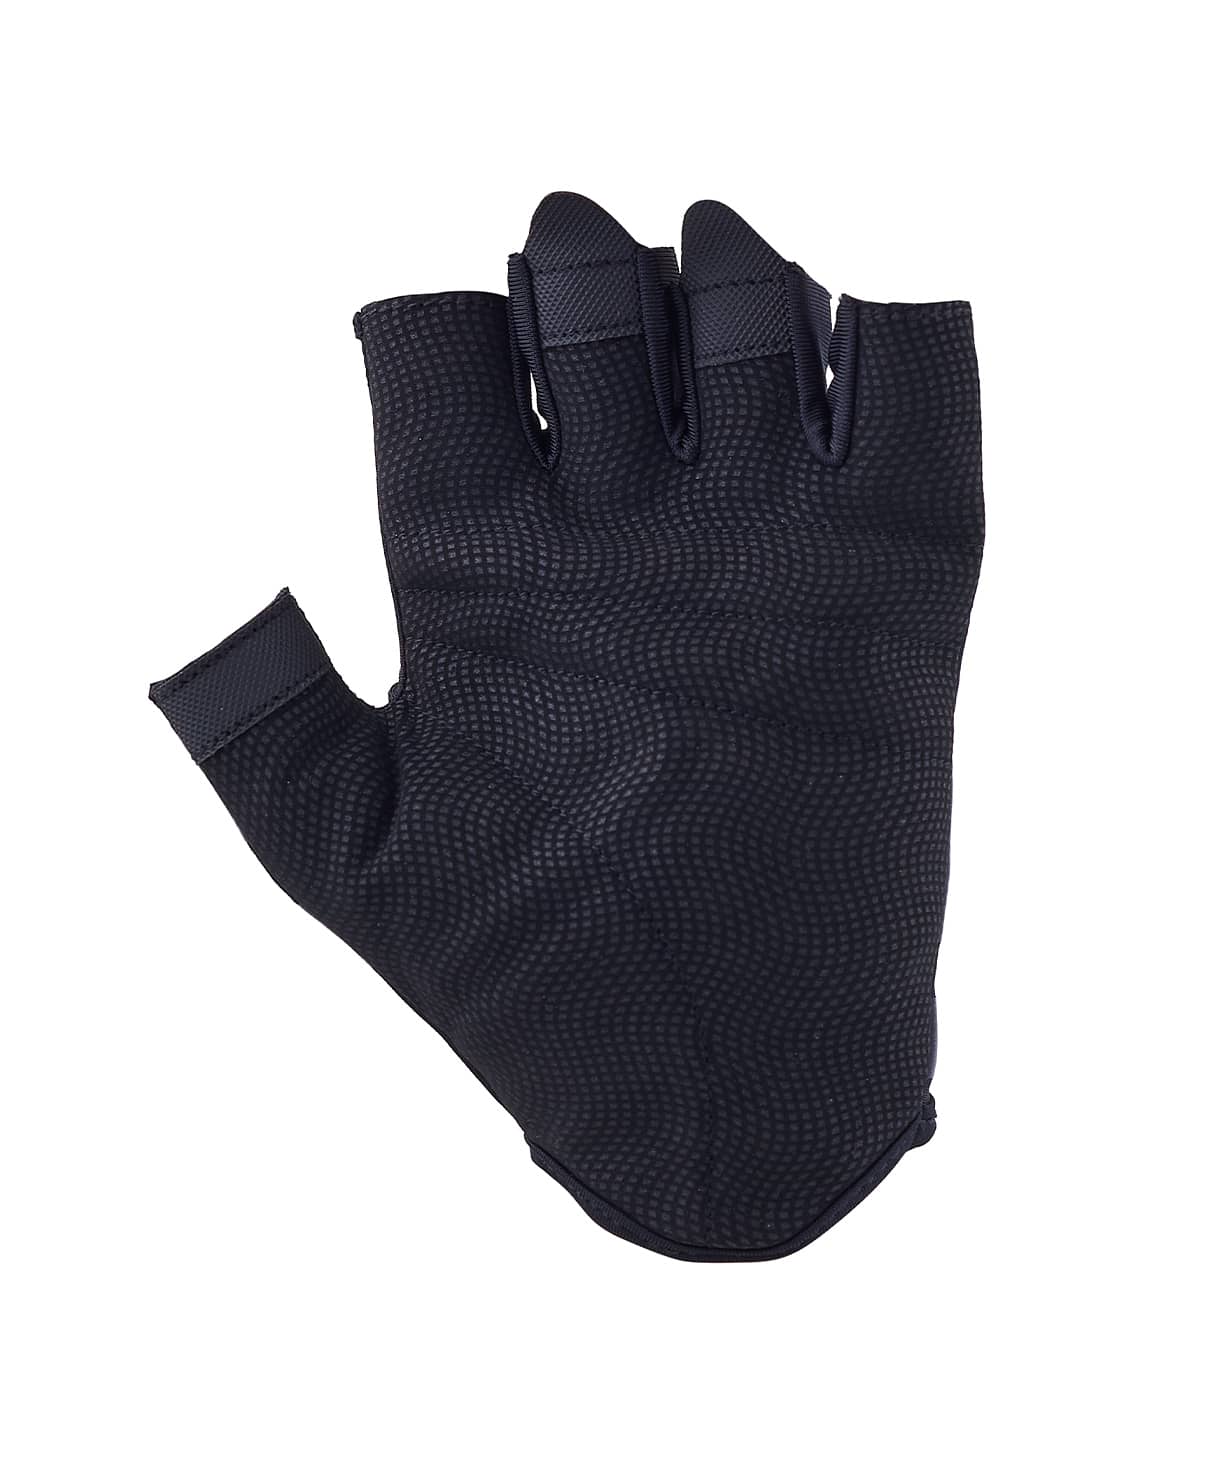 Перчатки для фитнеса Star Fit WG-102, черный/светоотражающий 1230_1479